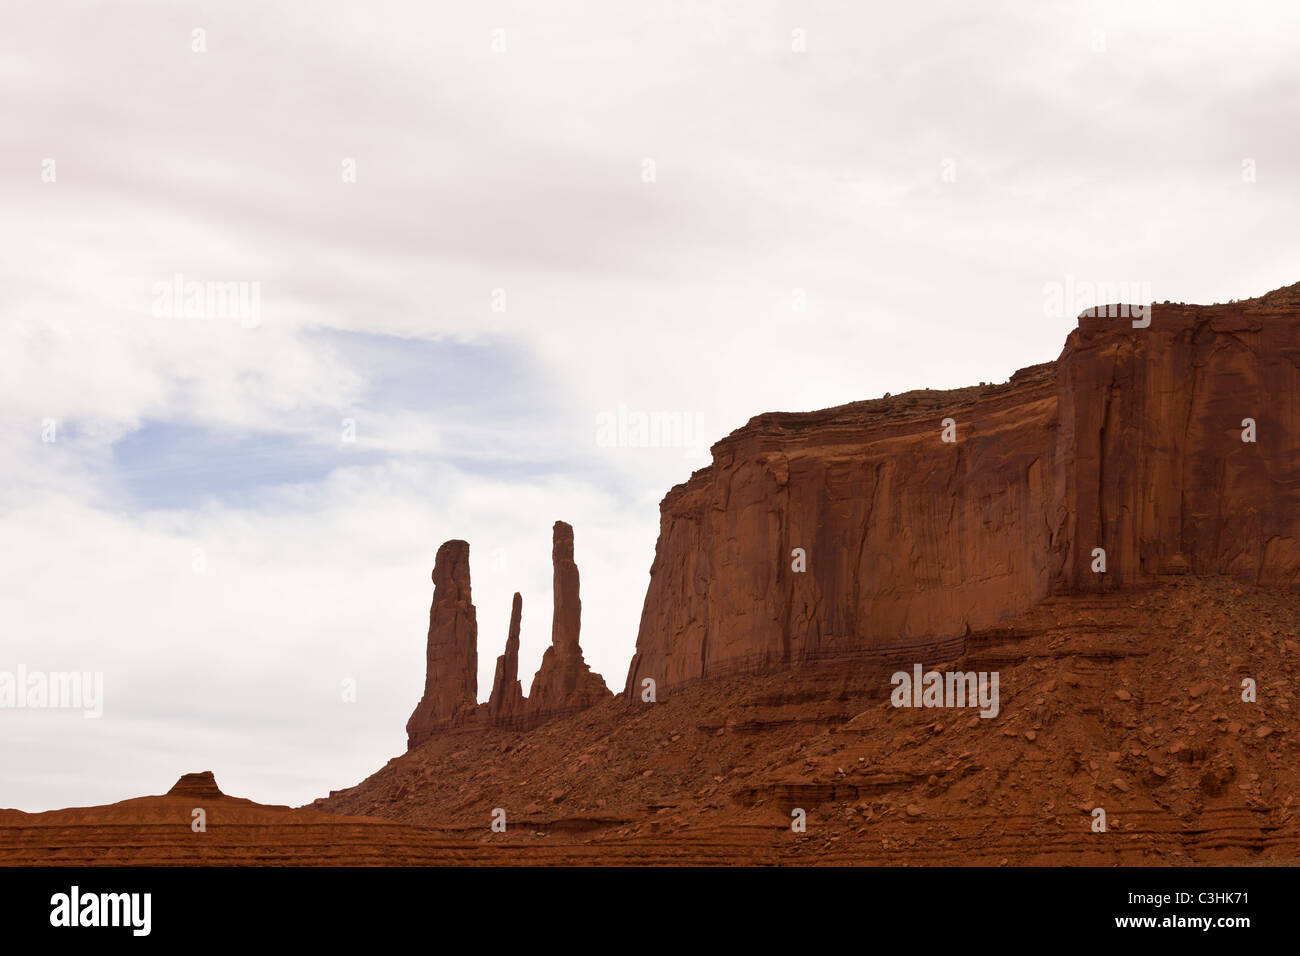 Die drei Schwestern Pinnacle Felsformation im Monument Valley Navajo Tribal Park, zwischen Arizona und Utah im Südwesten der USA. Stockfoto